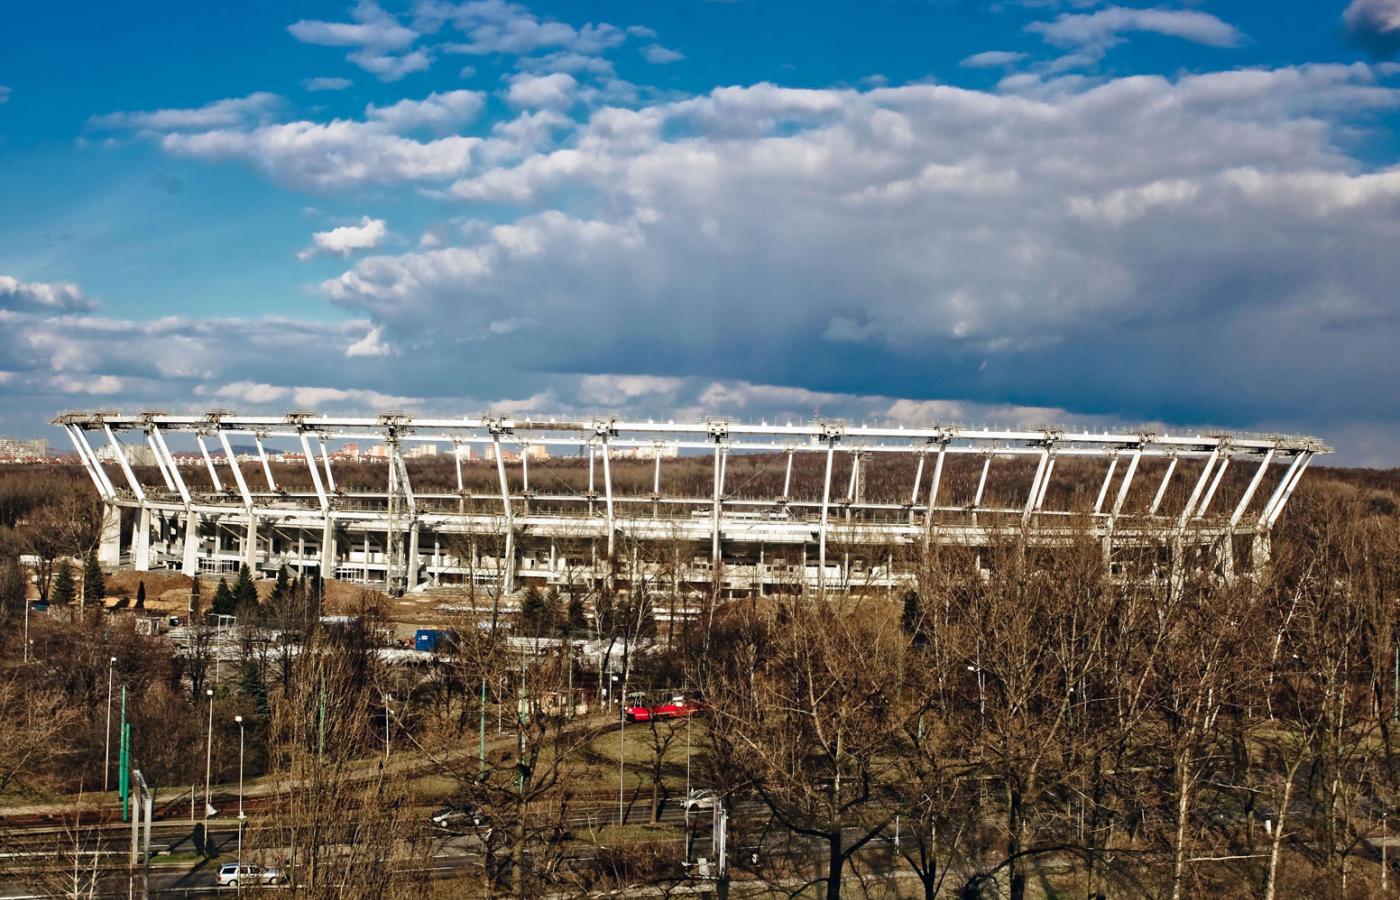 Przeciągająca się przebudowa Stadionu Śląskiego jest coraz bardziej kompromitująca dla władz, utrudnia też życie okolicznym mieszkańcom.